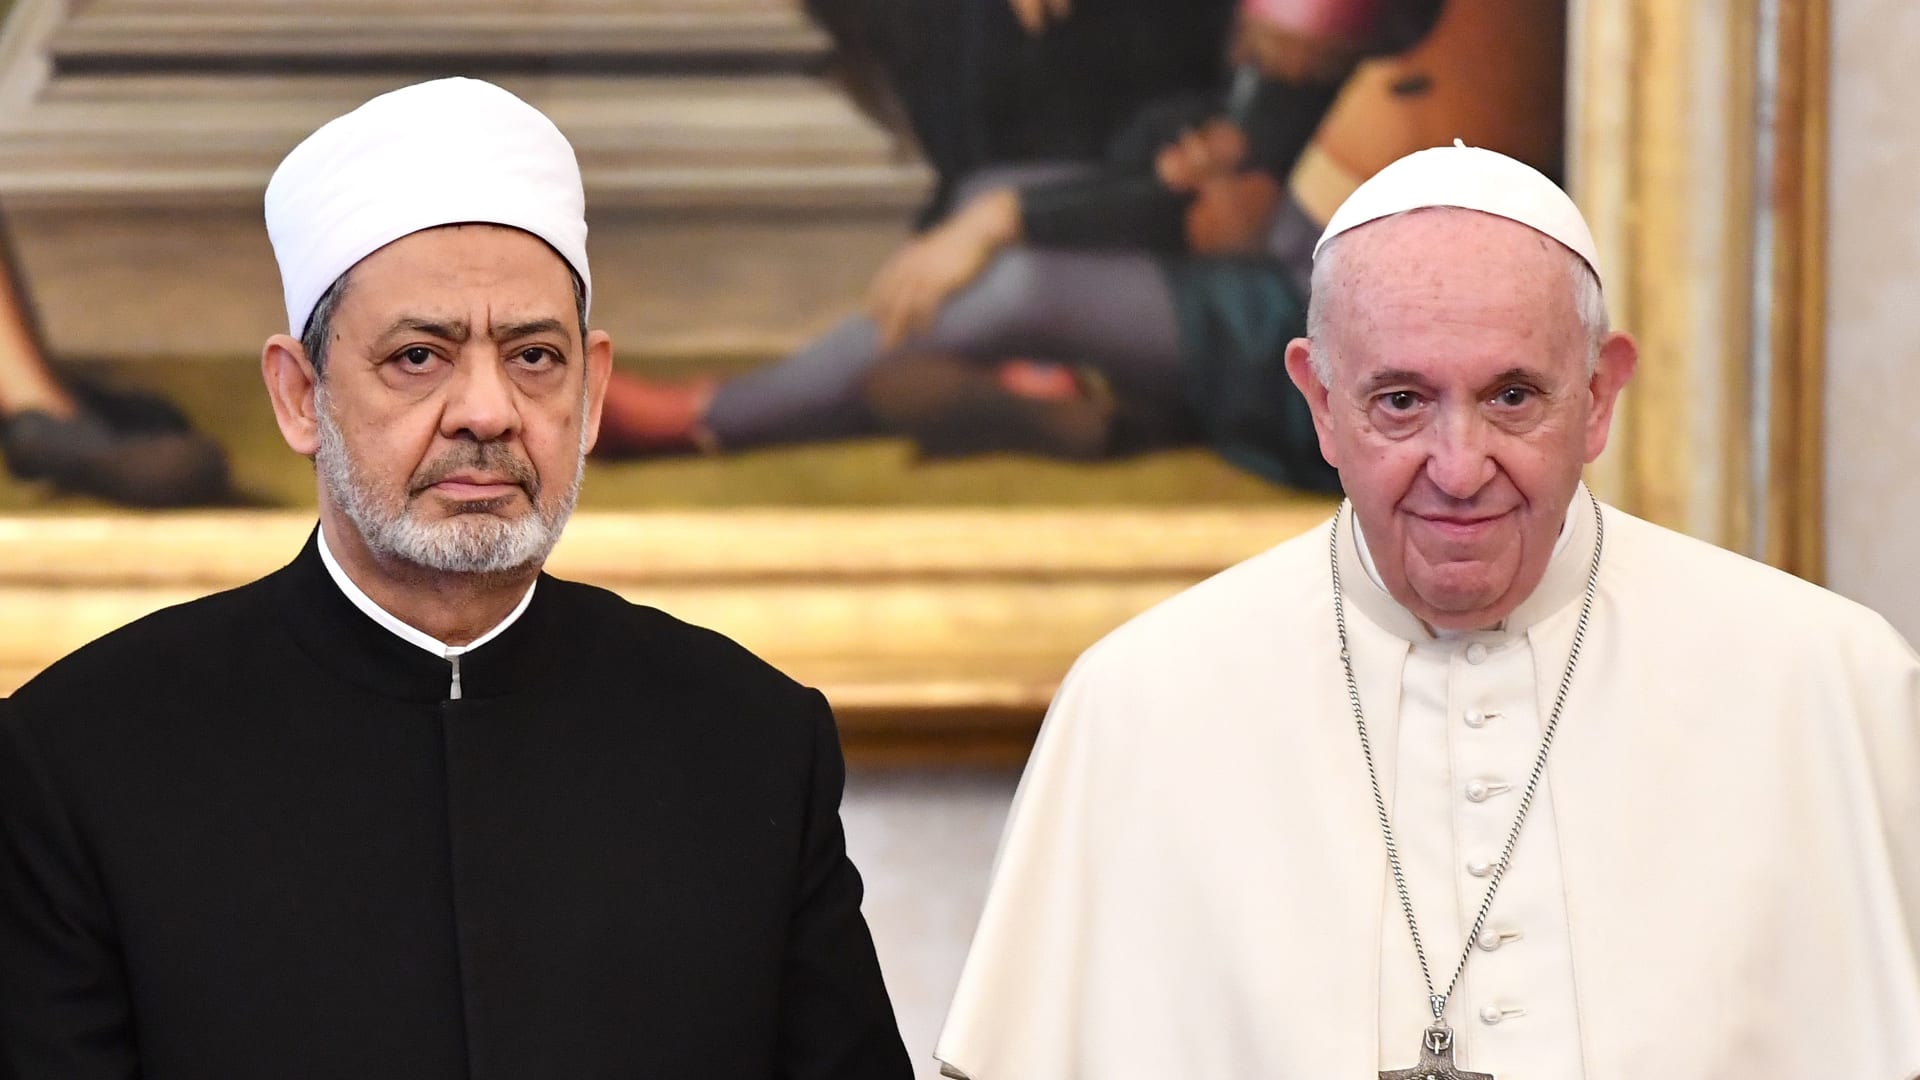 البحرين: البابا فرنسيس وشيخ الأزهر يزوران البلاد في نوفمبر بناء على دعوة من الملك